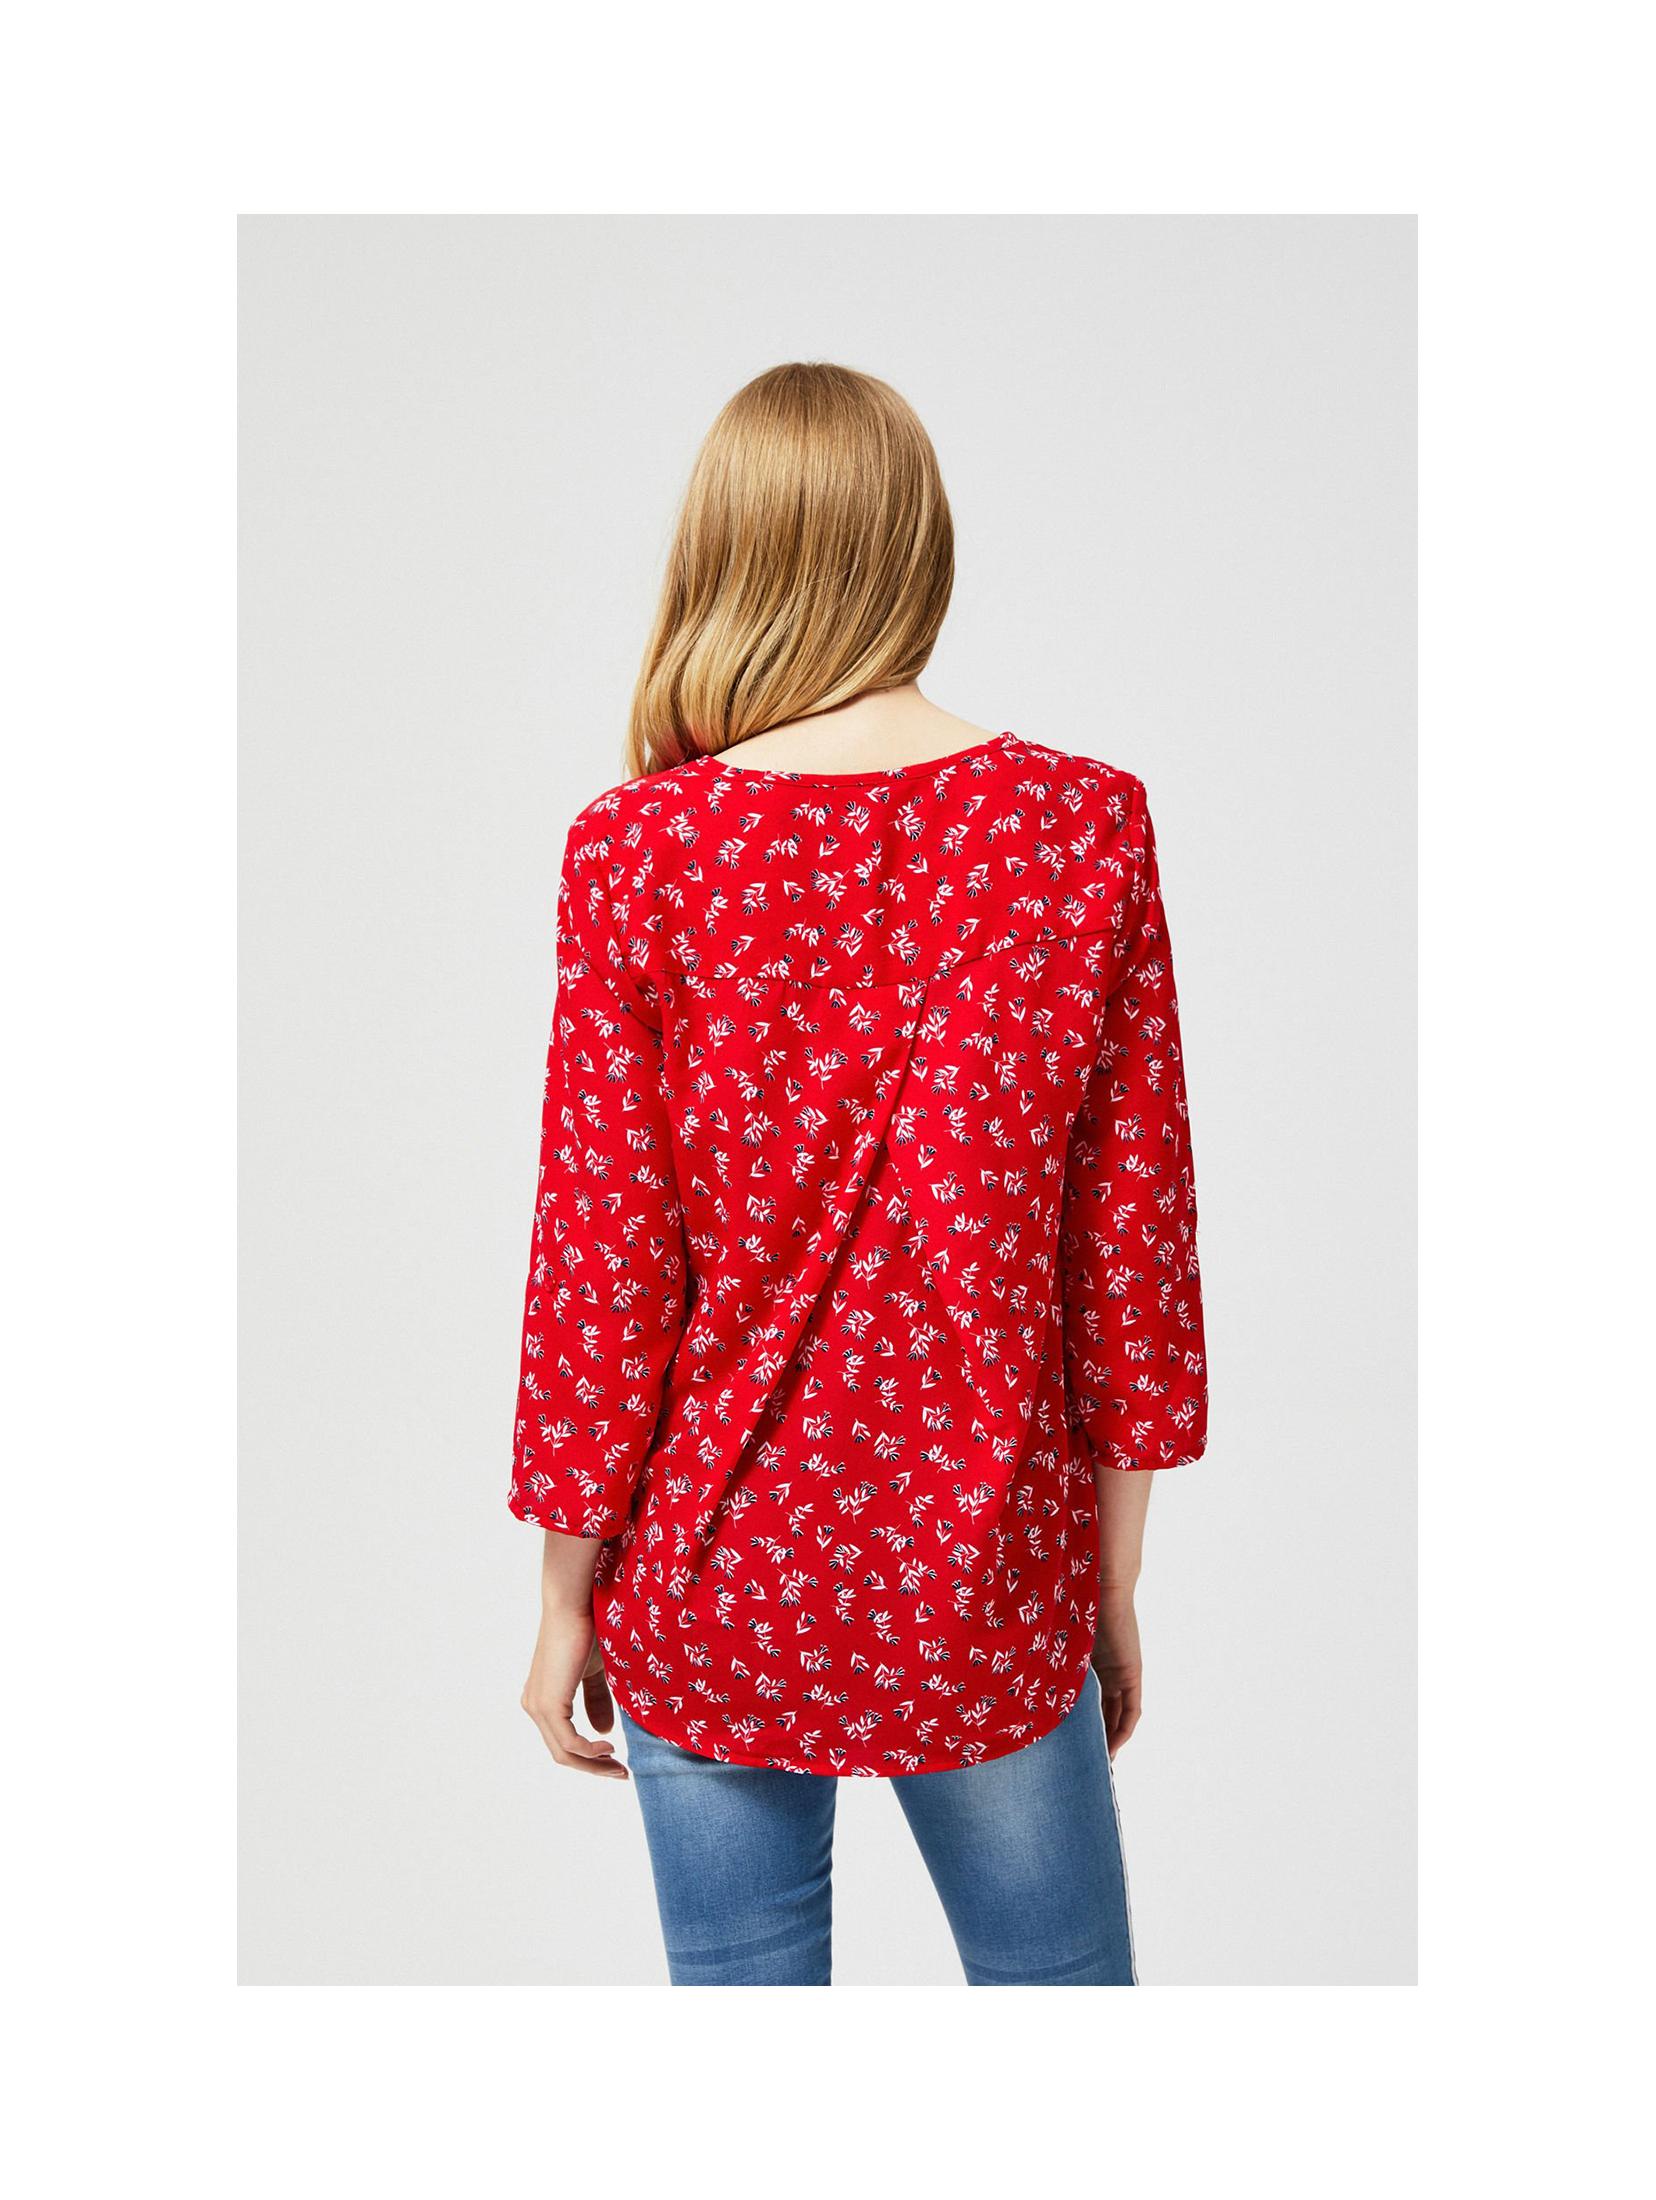 Koszula damska - czerwona w kwiaty